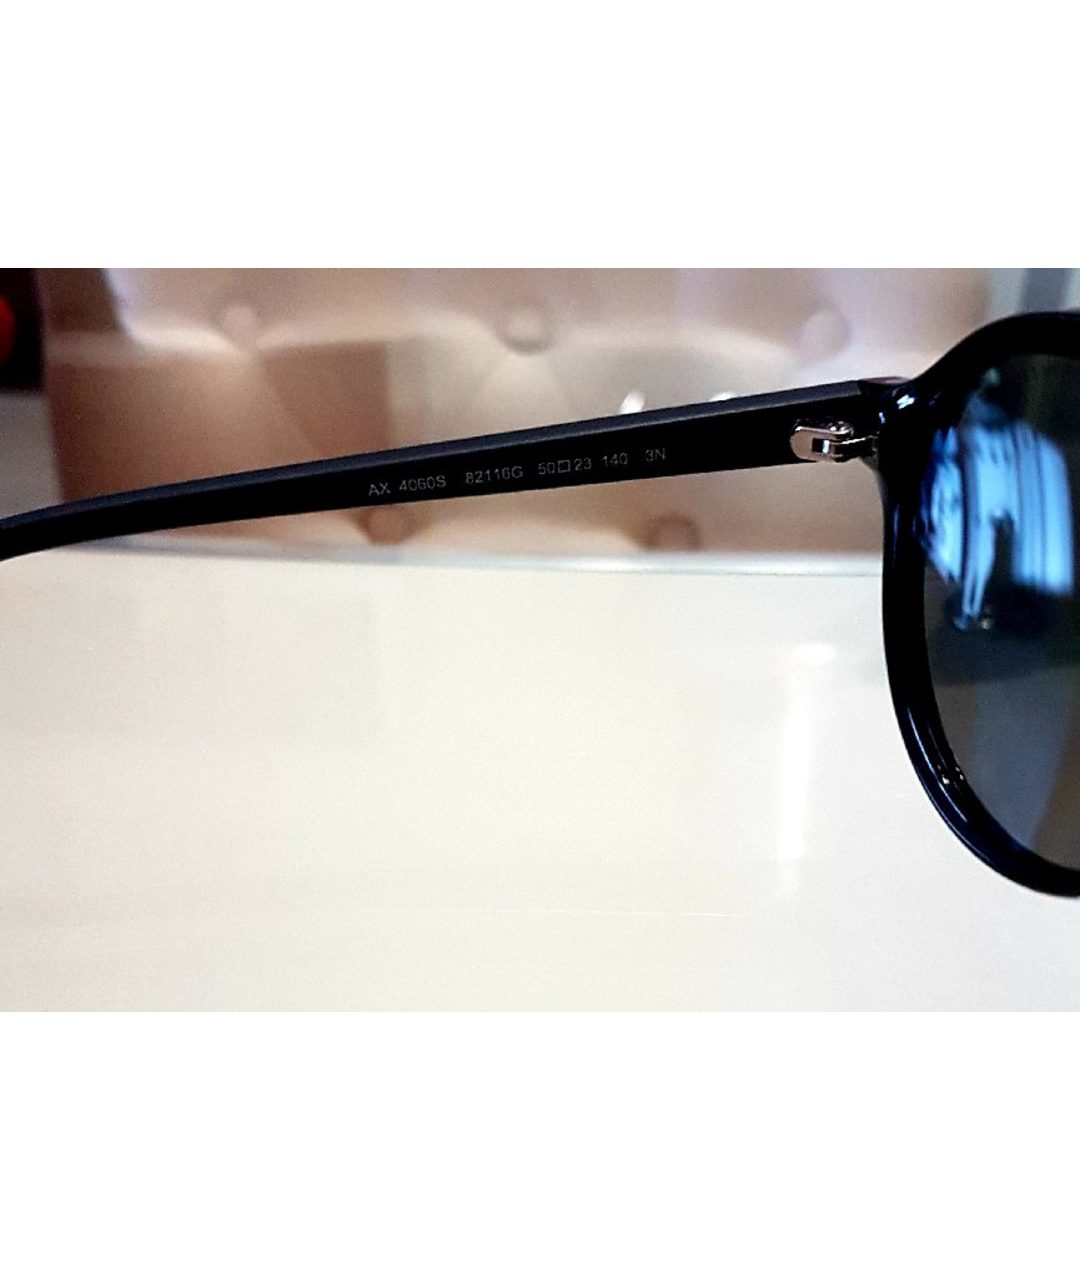 EMPORIO ARMANI Черные металлические солнцезащитные очки, фото 4